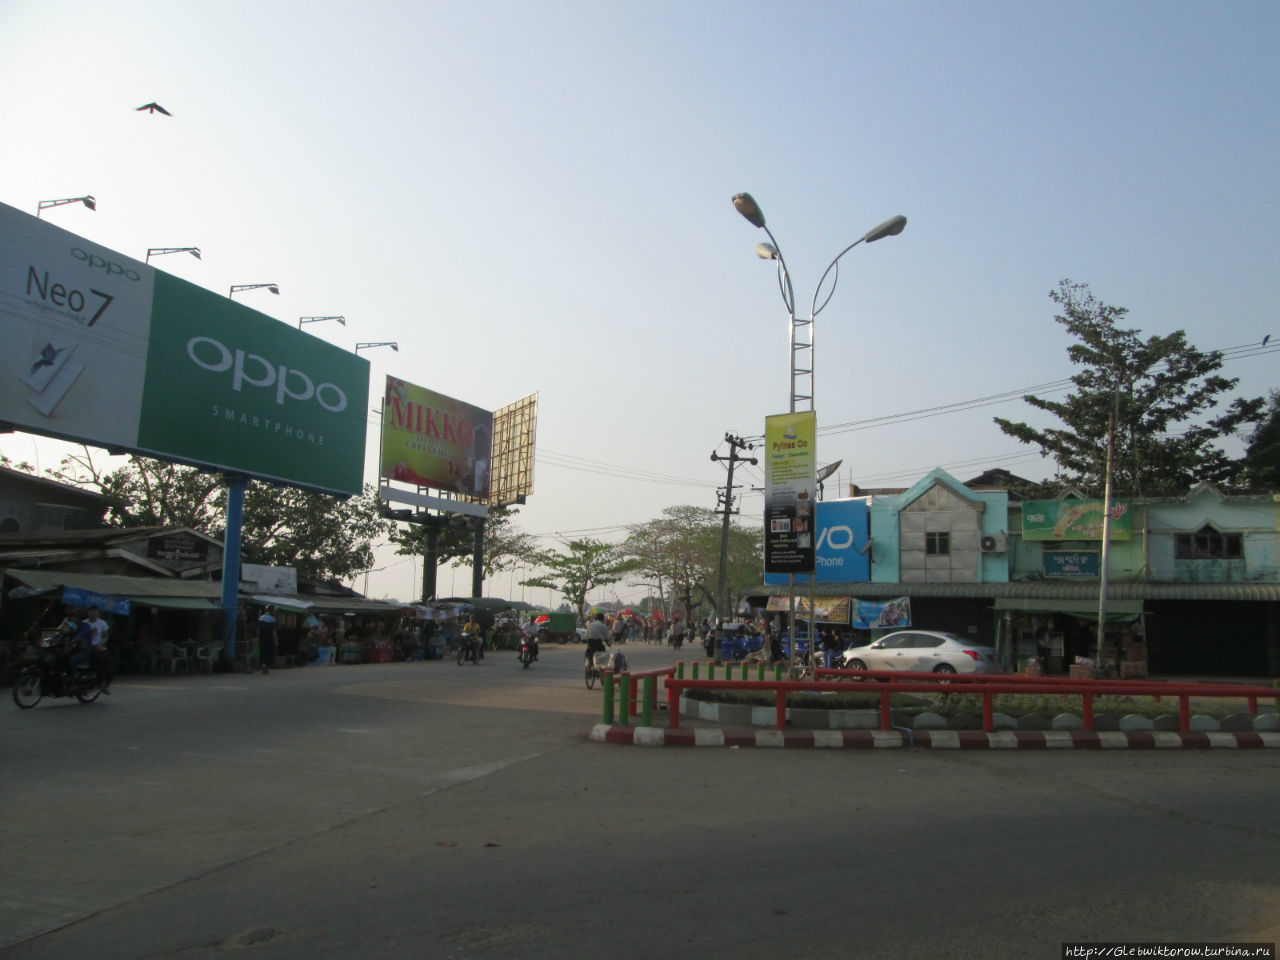 Пешком по центру города до мэрии Патейн, Мьянма